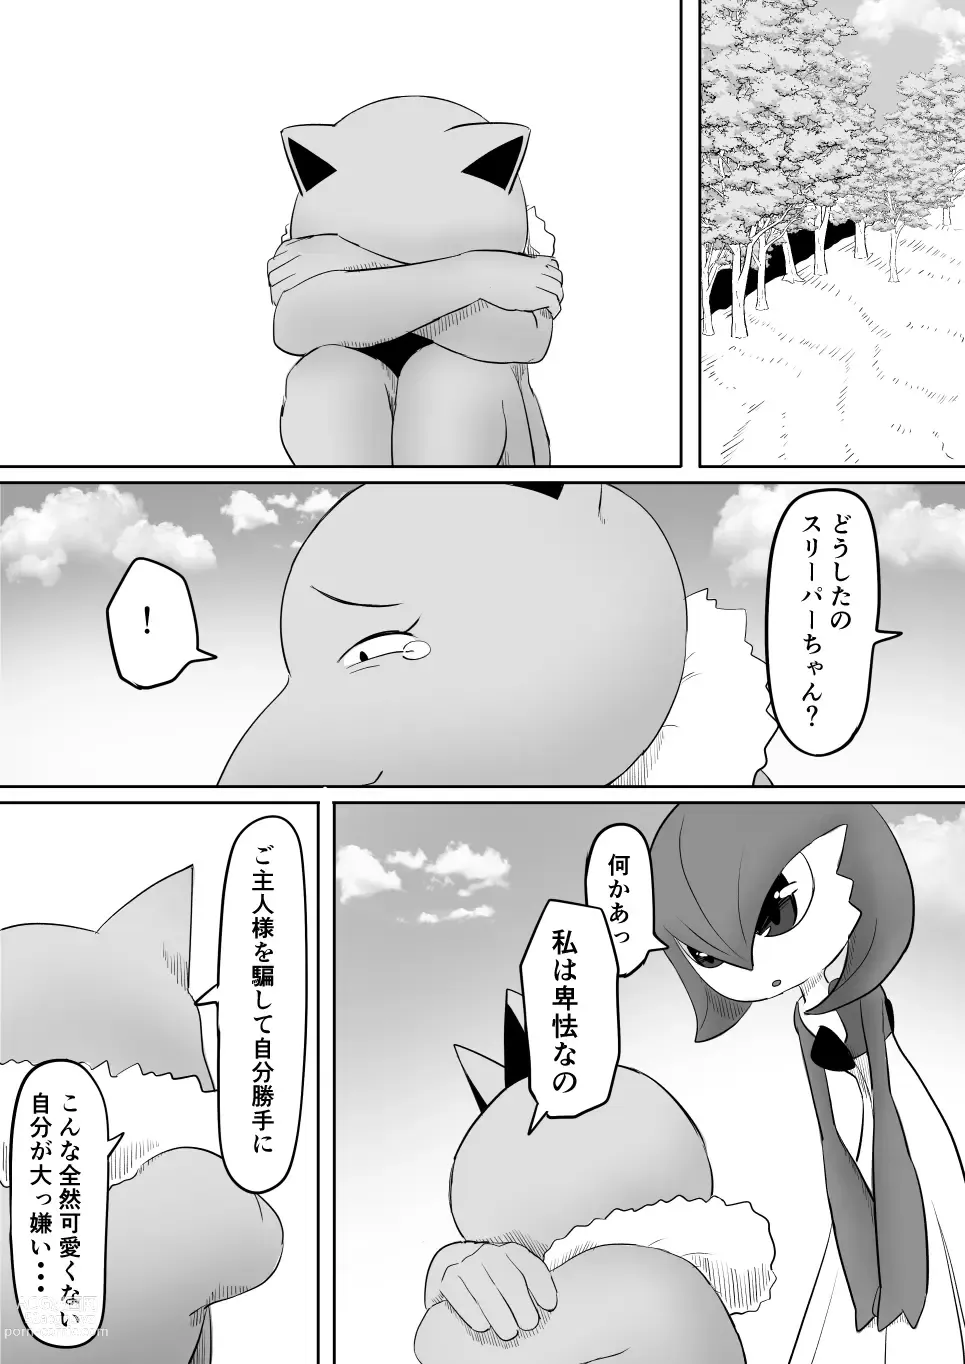 Page 34 of doujinshi Koi o Shita Sleeper-chan.